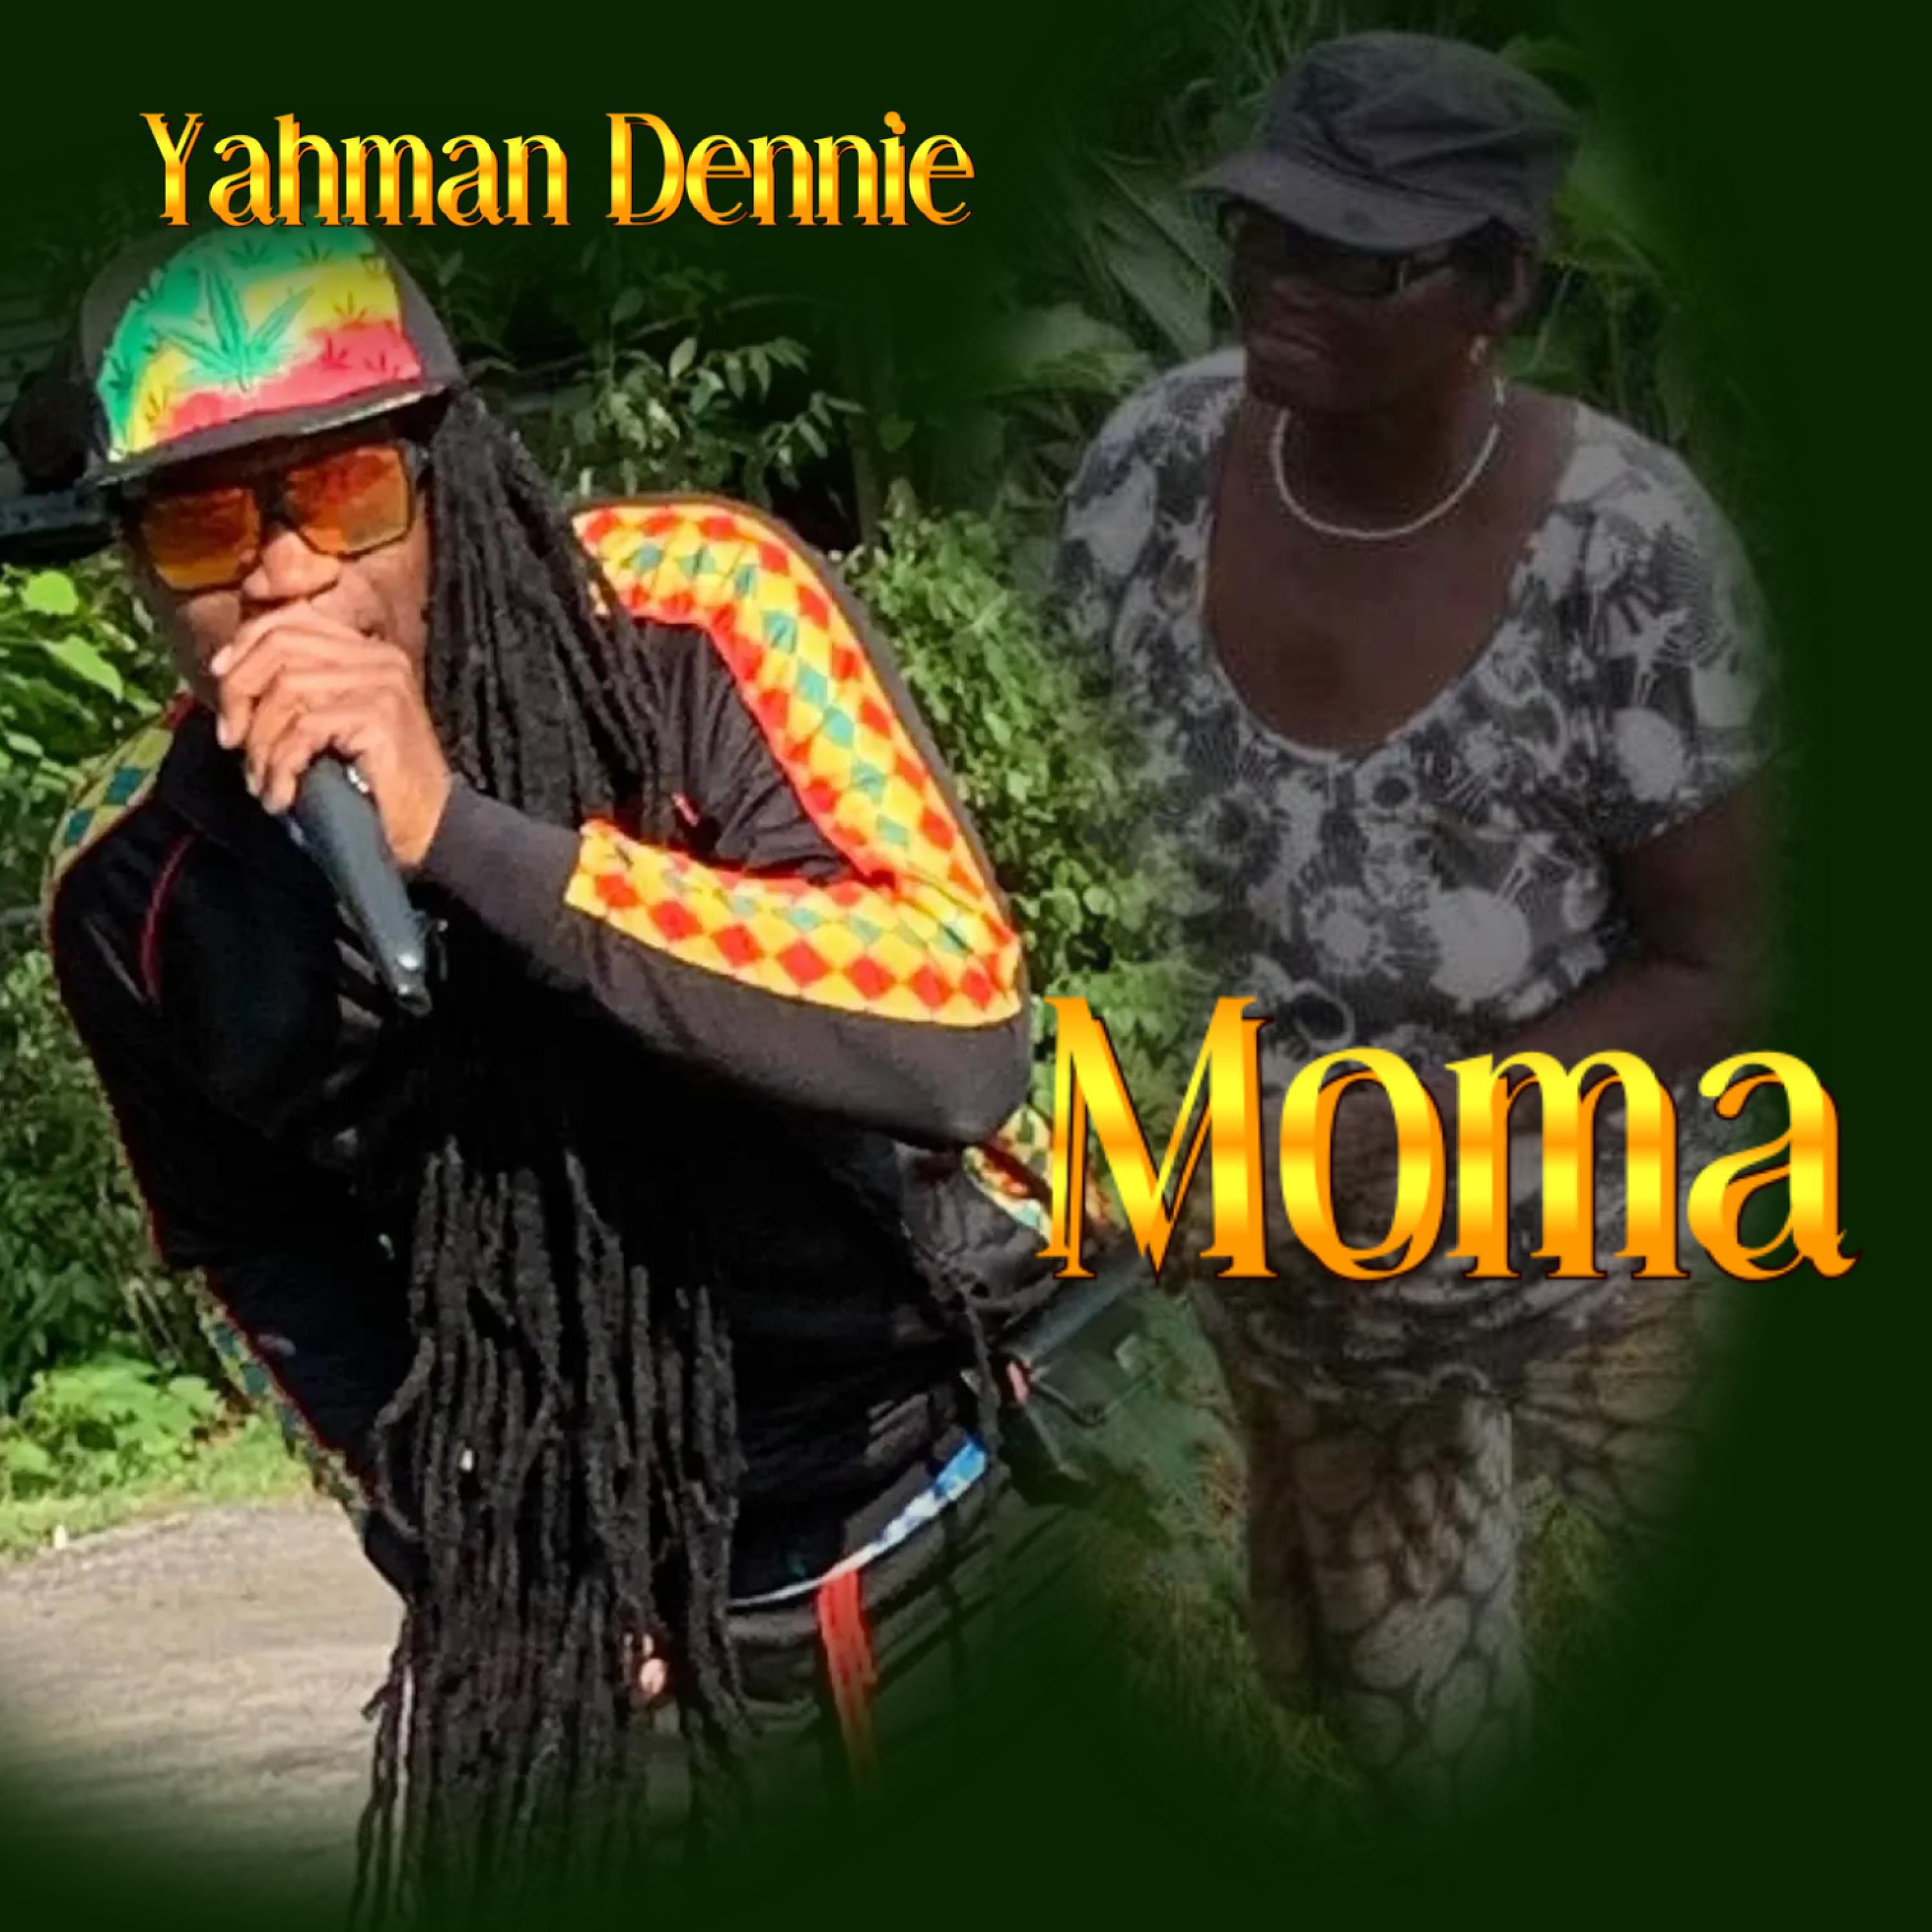 Yahman Dennie - Moma